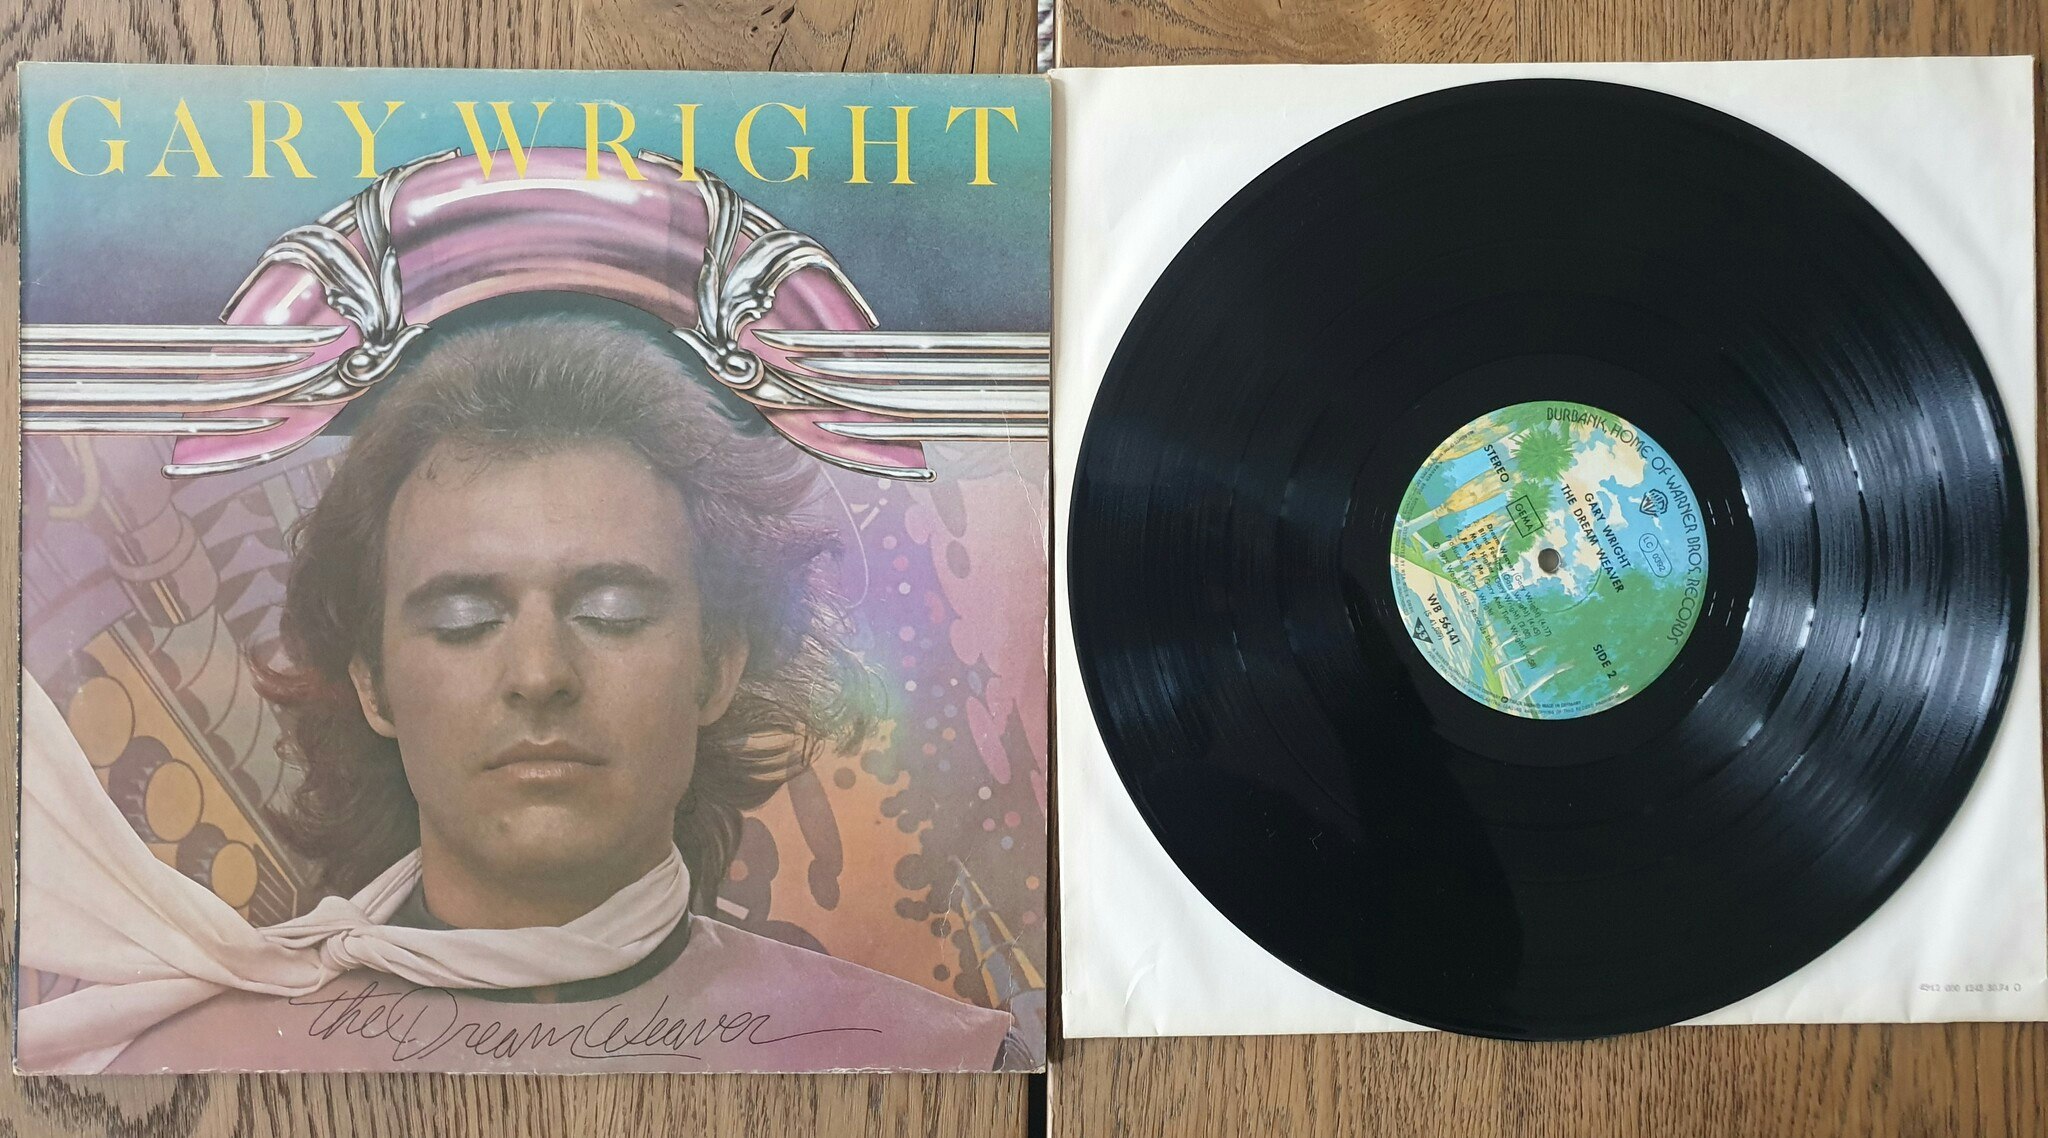 Gary Wright, The dream weaver. Vinyl LP